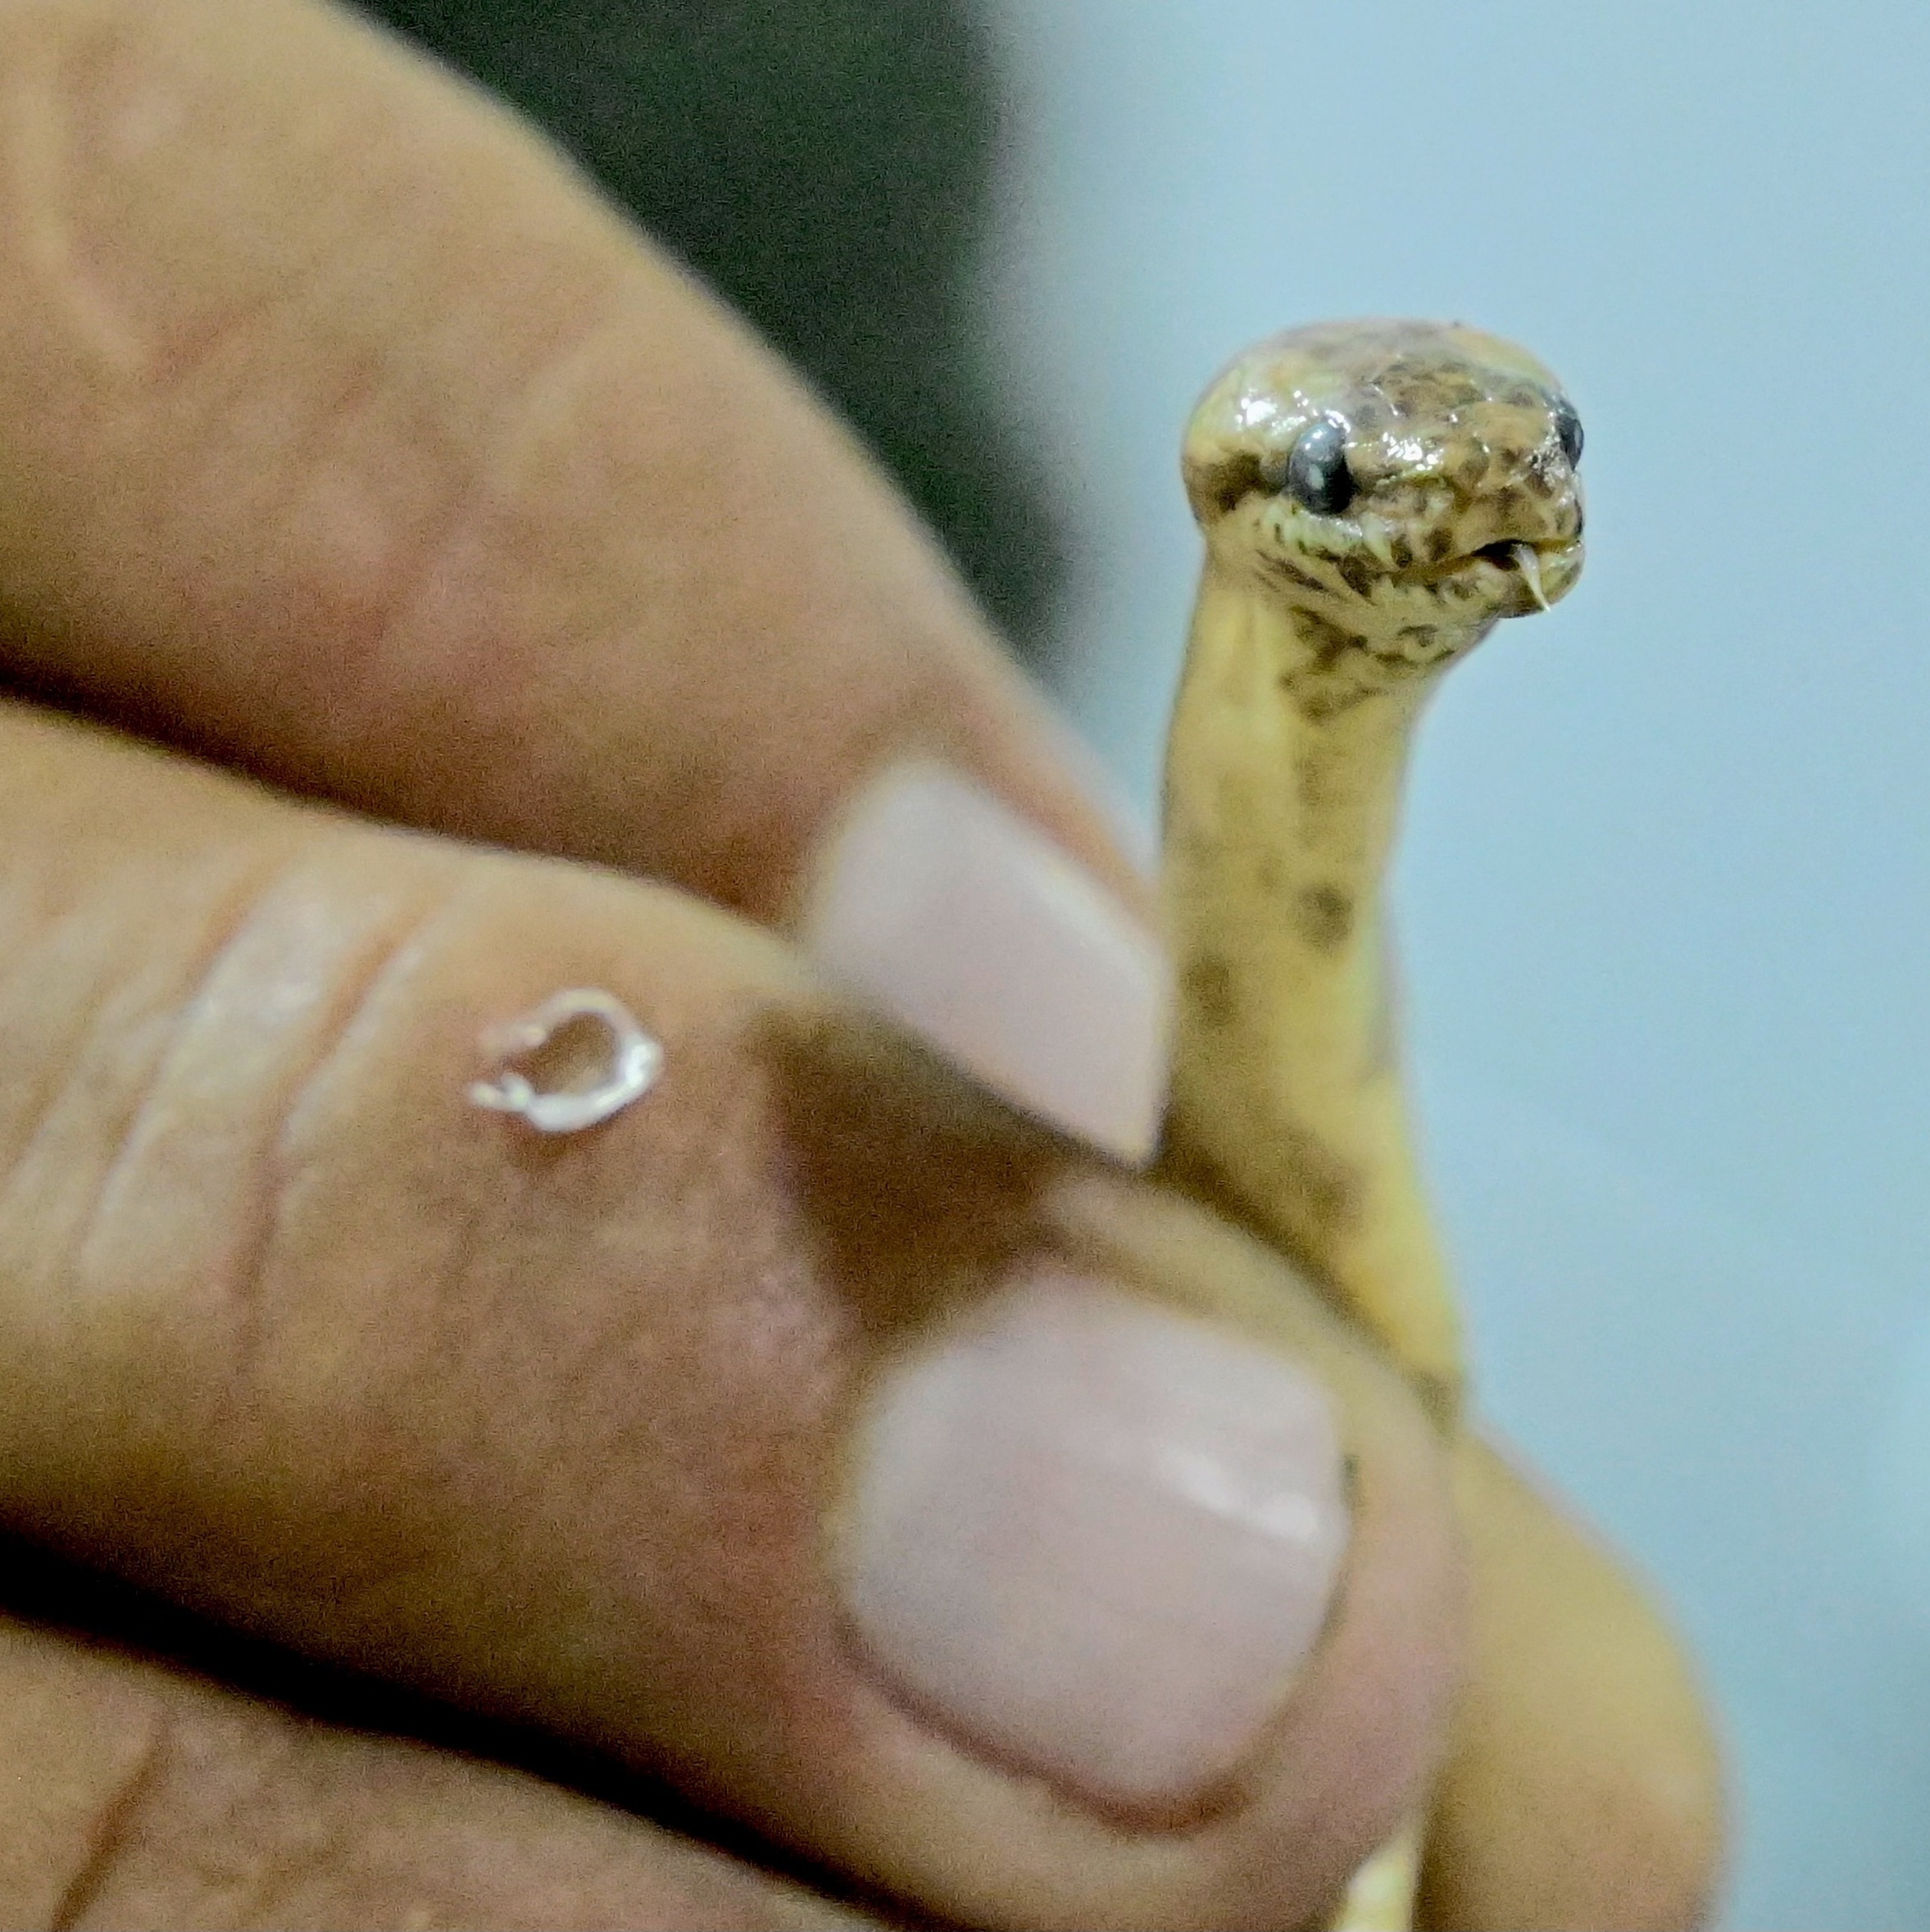 Cinco novas espécies de cobras são descobertas na Amazônia, entre